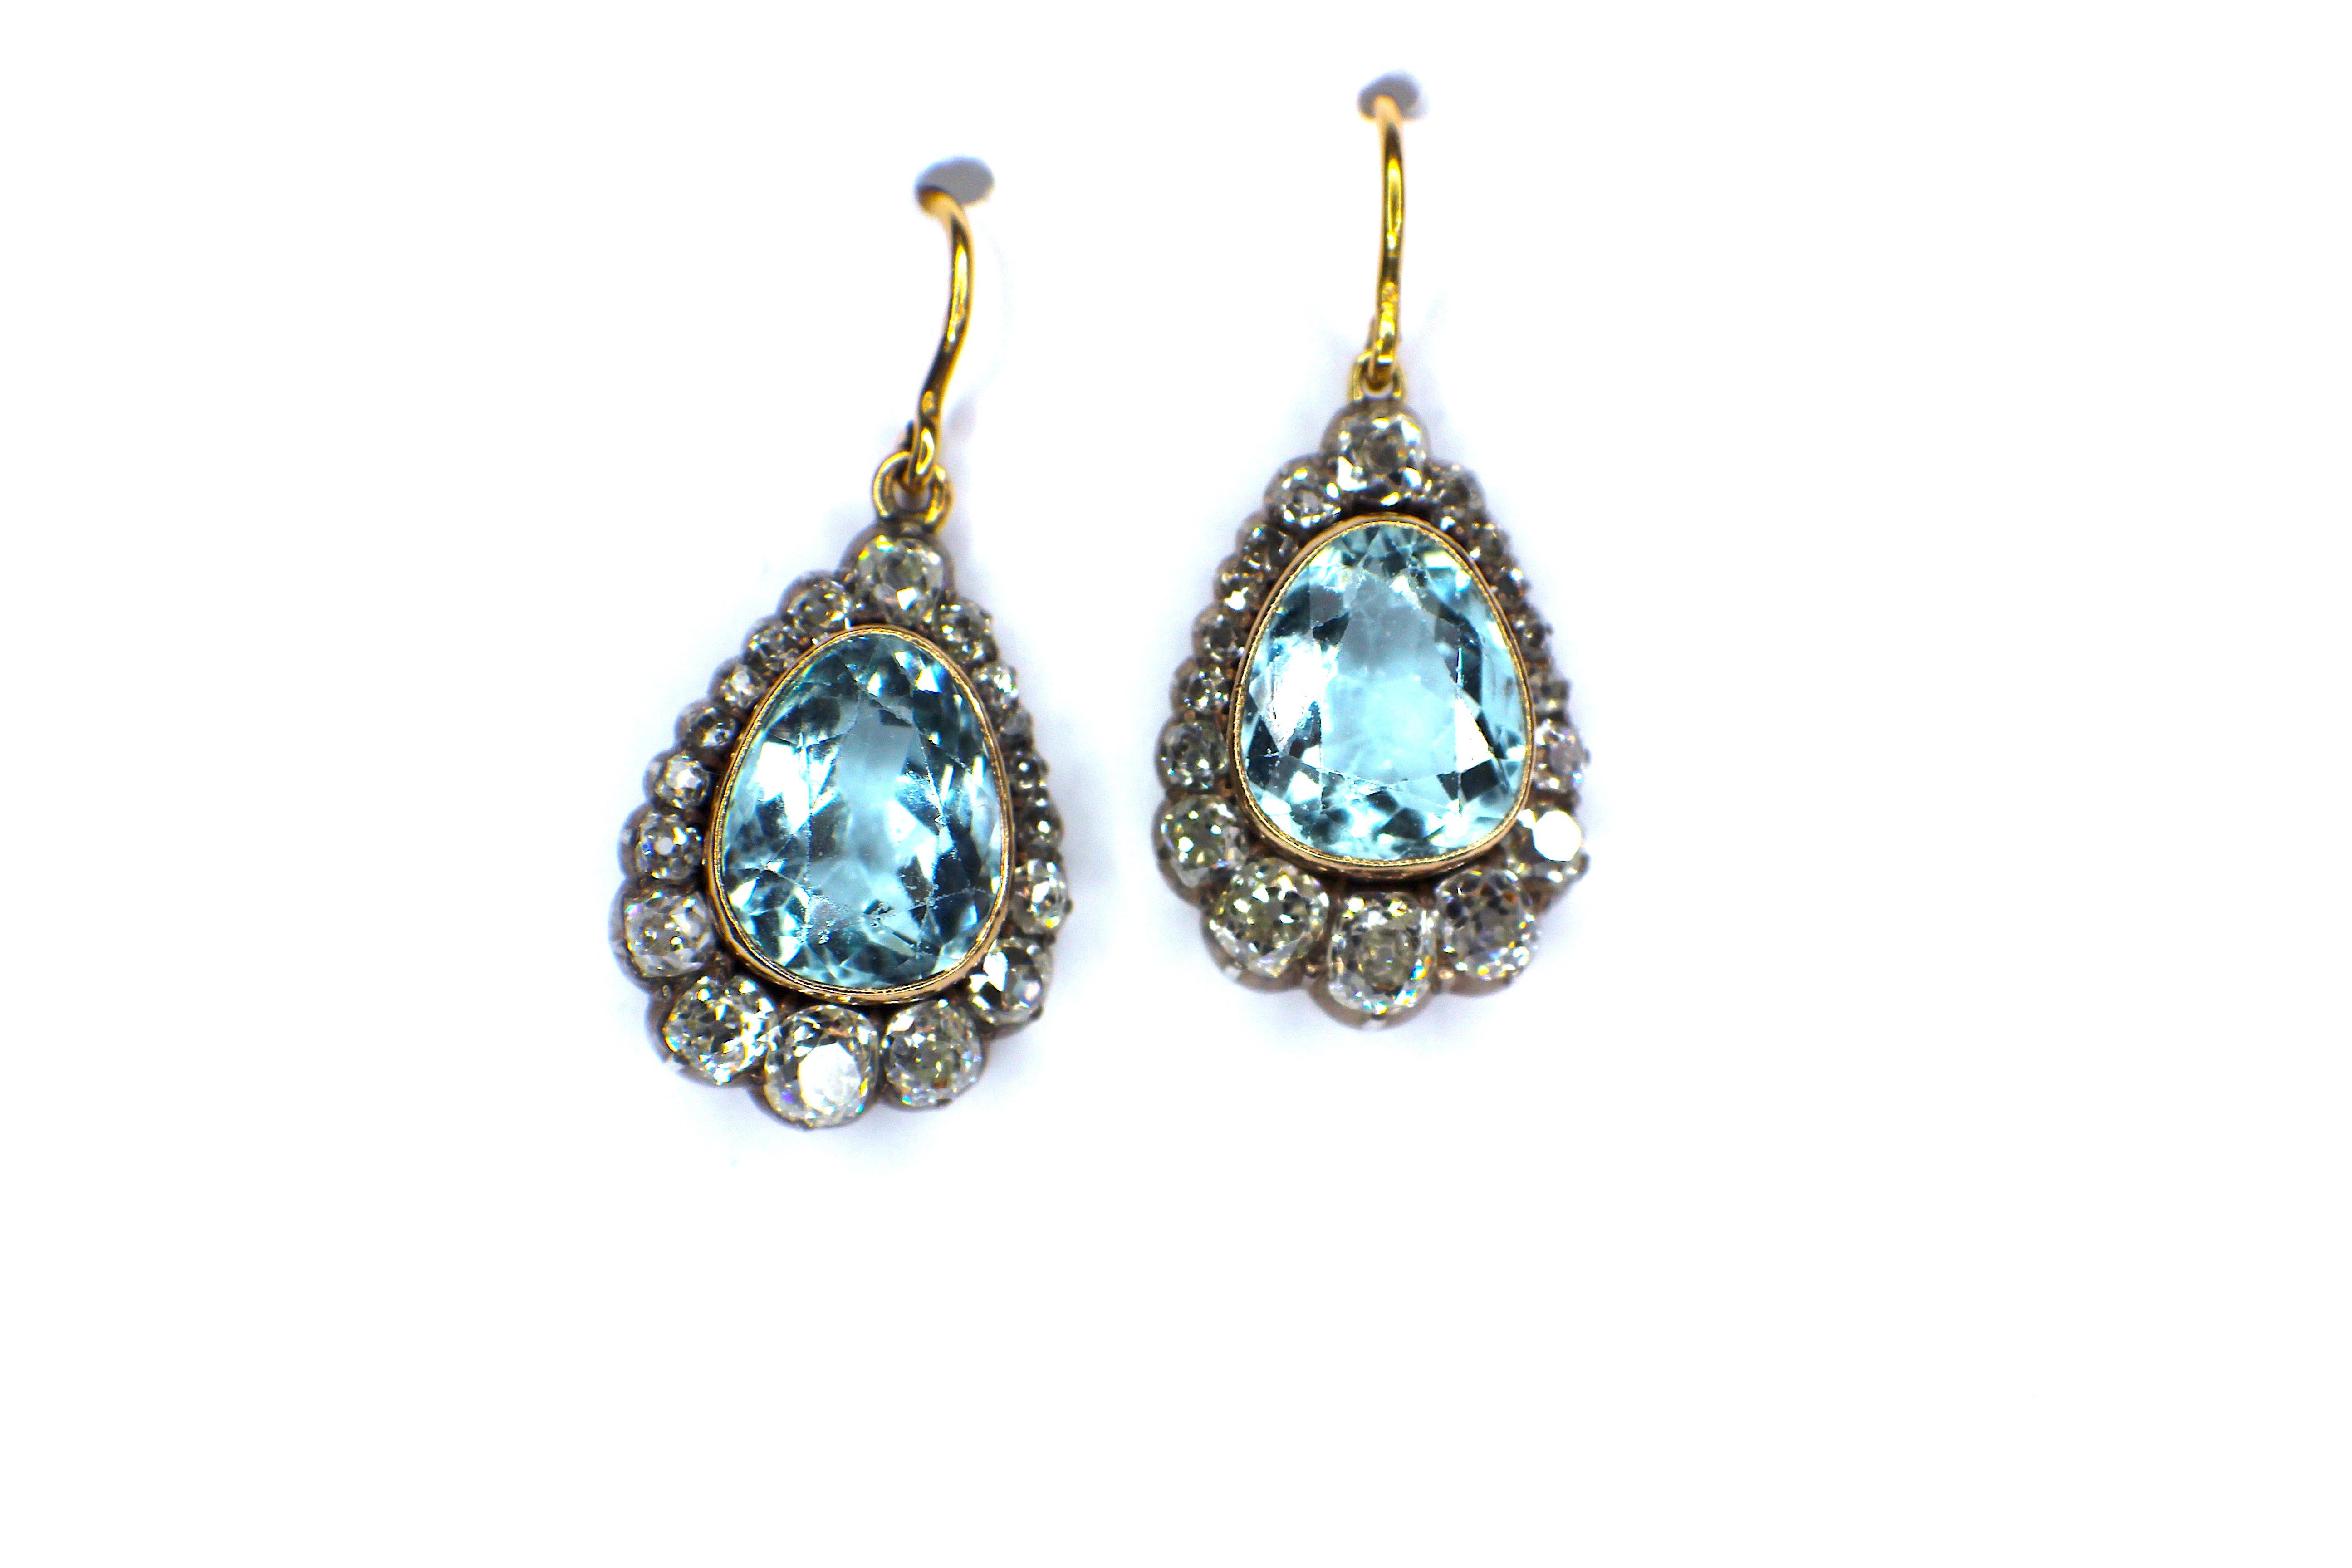 Antique Aquamarine & Diamond Pendant Earrings 19th Century.